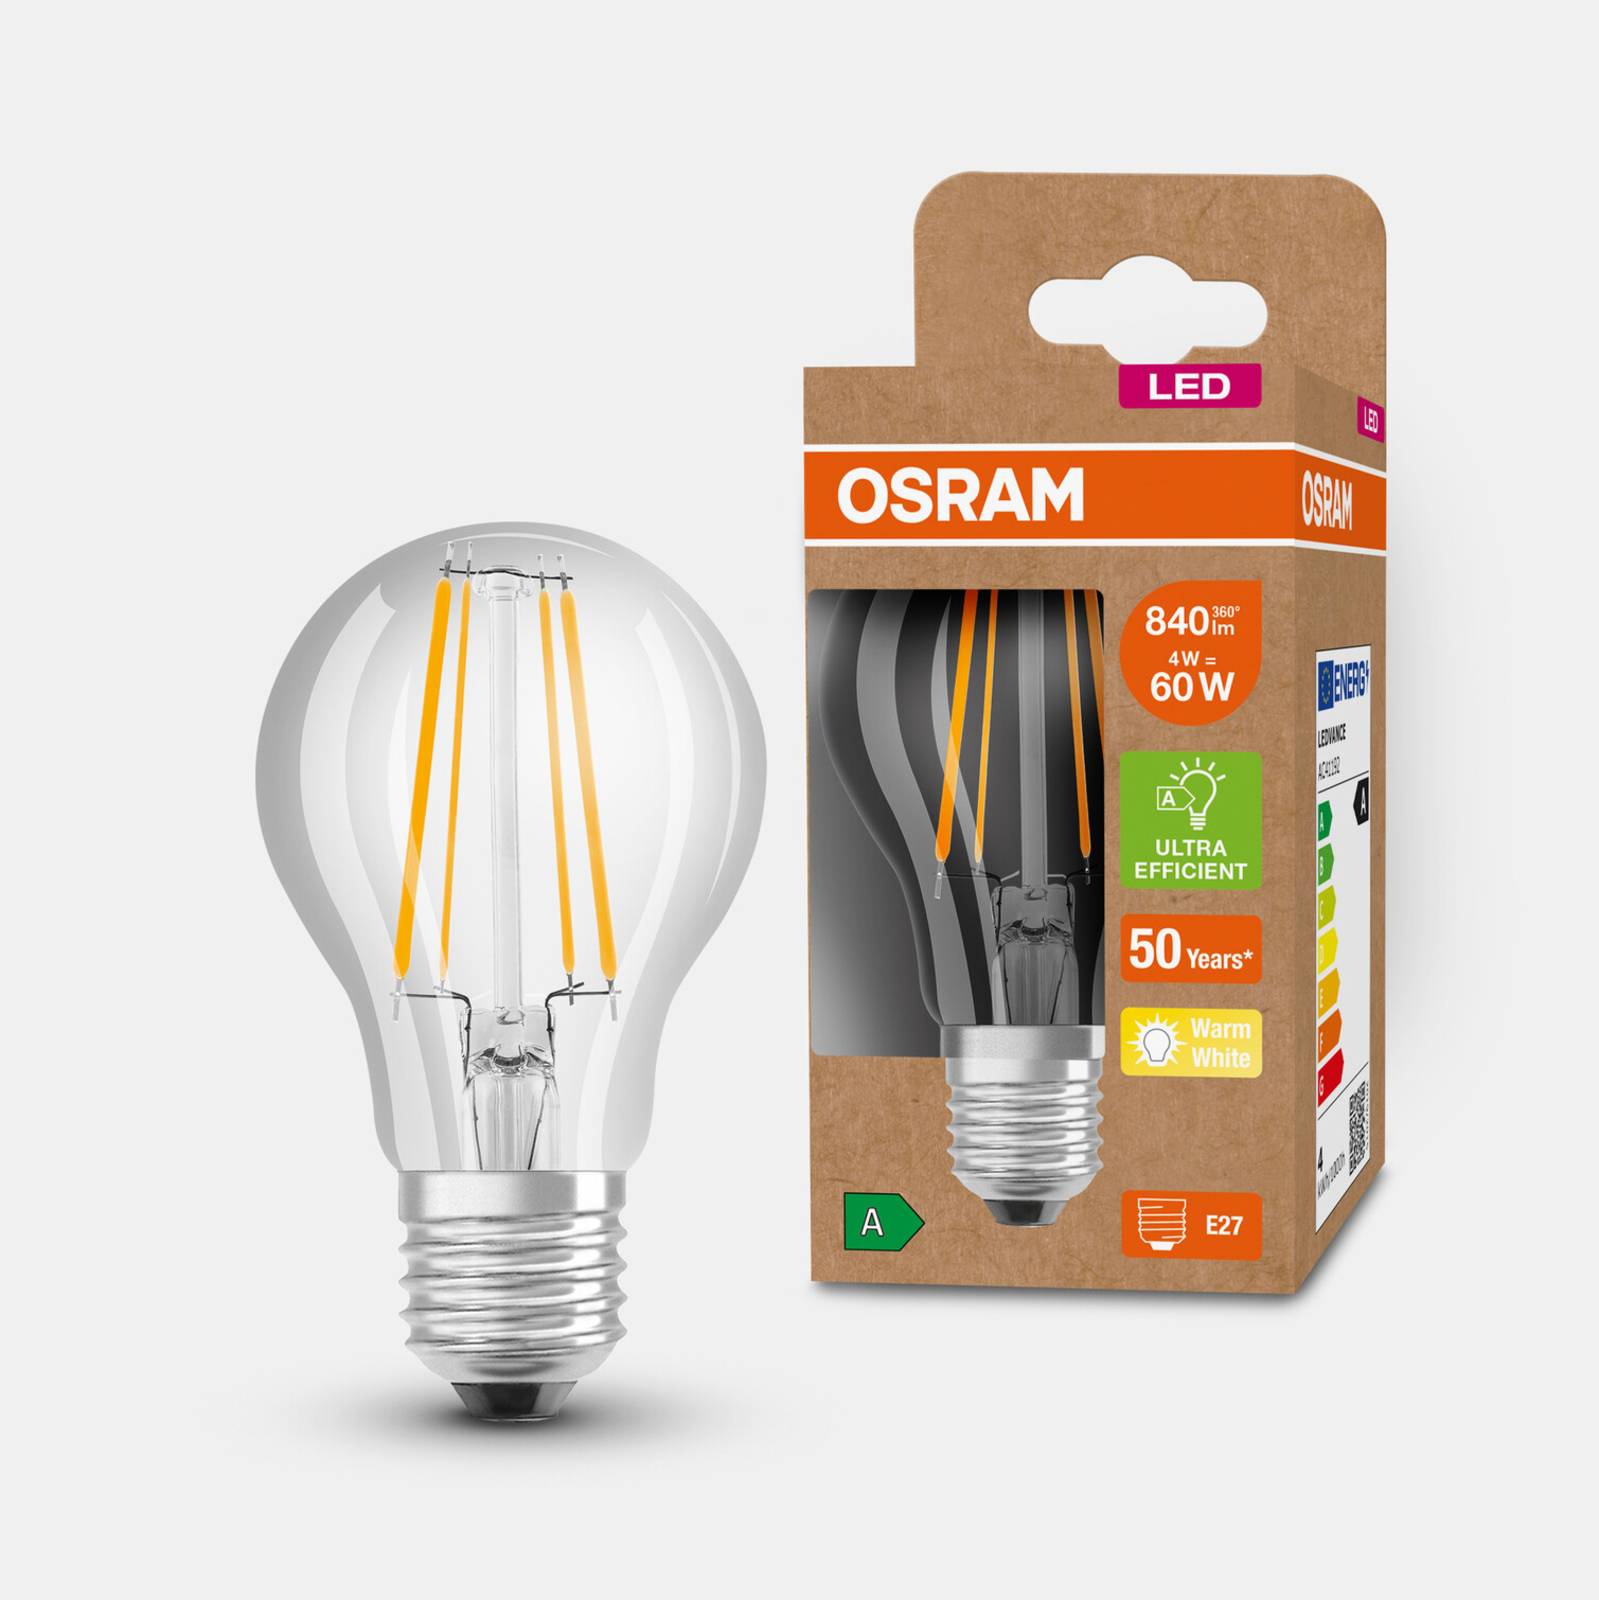 OSRAM Žárovka OSRAM LED E27 A60 4W 840lm 3000K čirá